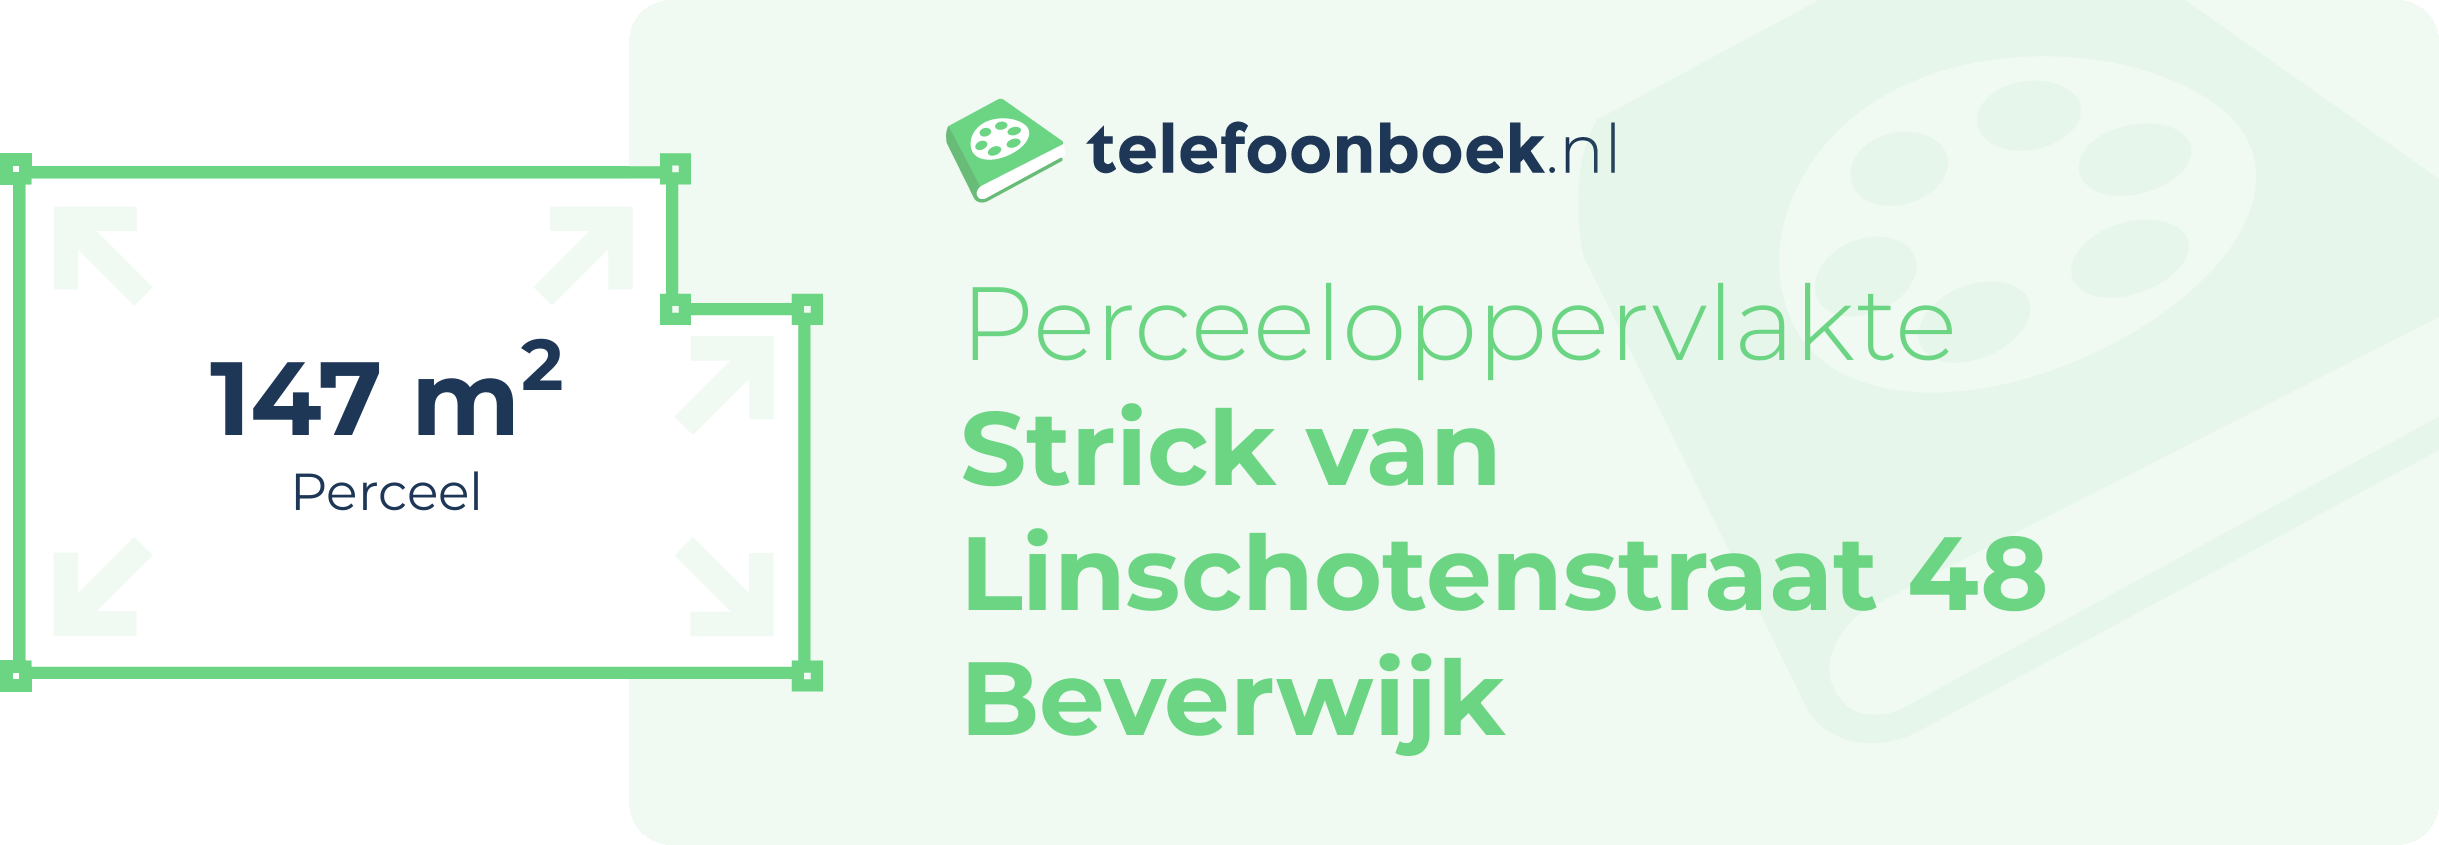 Perceeloppervlakte Strick Van Linschotenstraat 48 Beverwijk